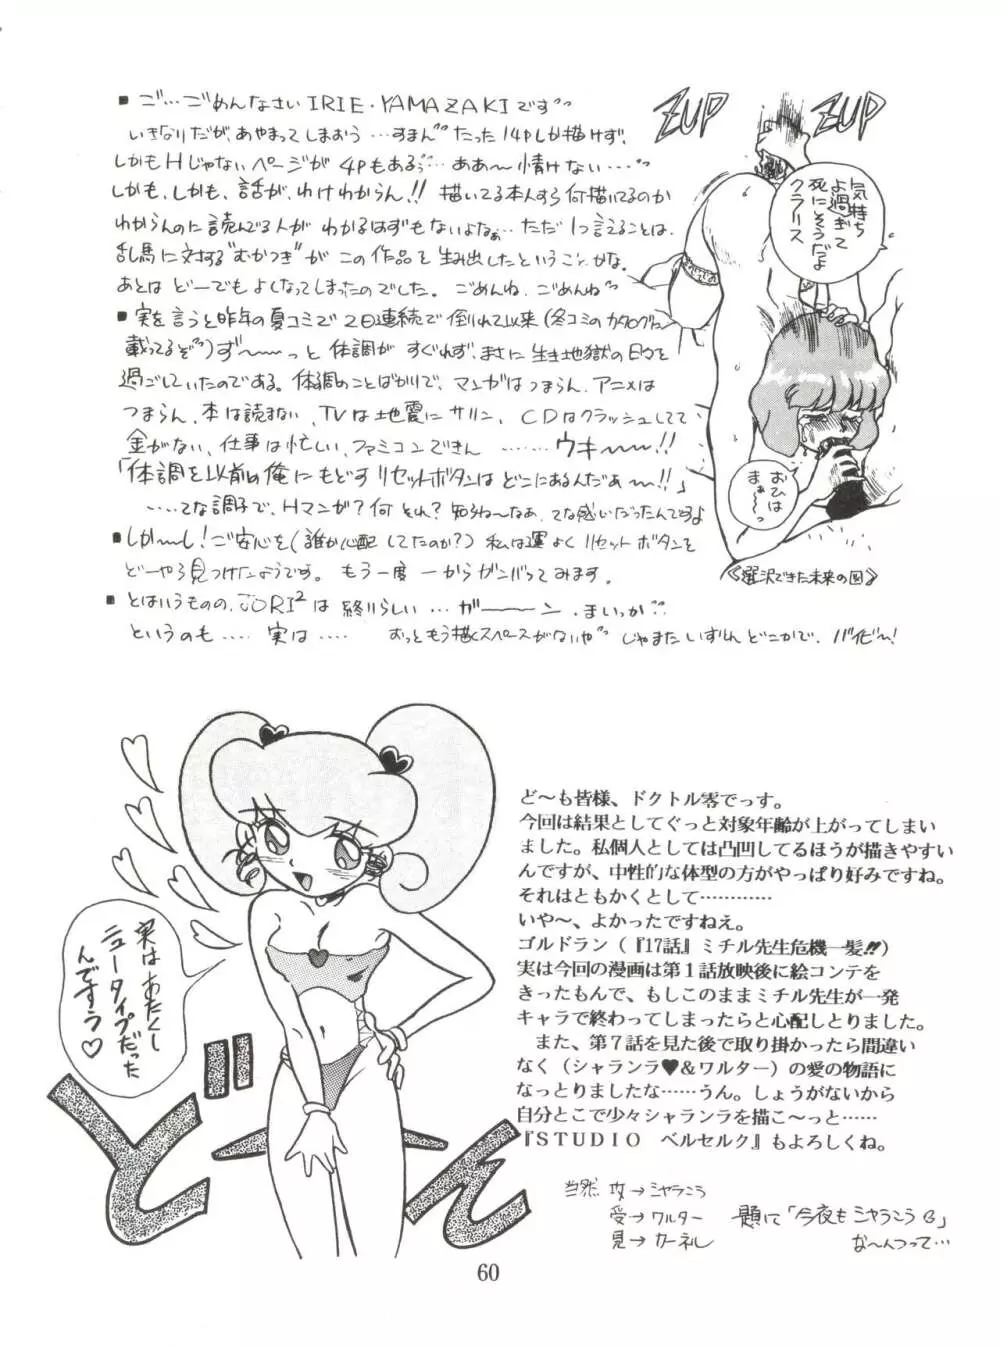 JoRiJoRi No.6 59ページ